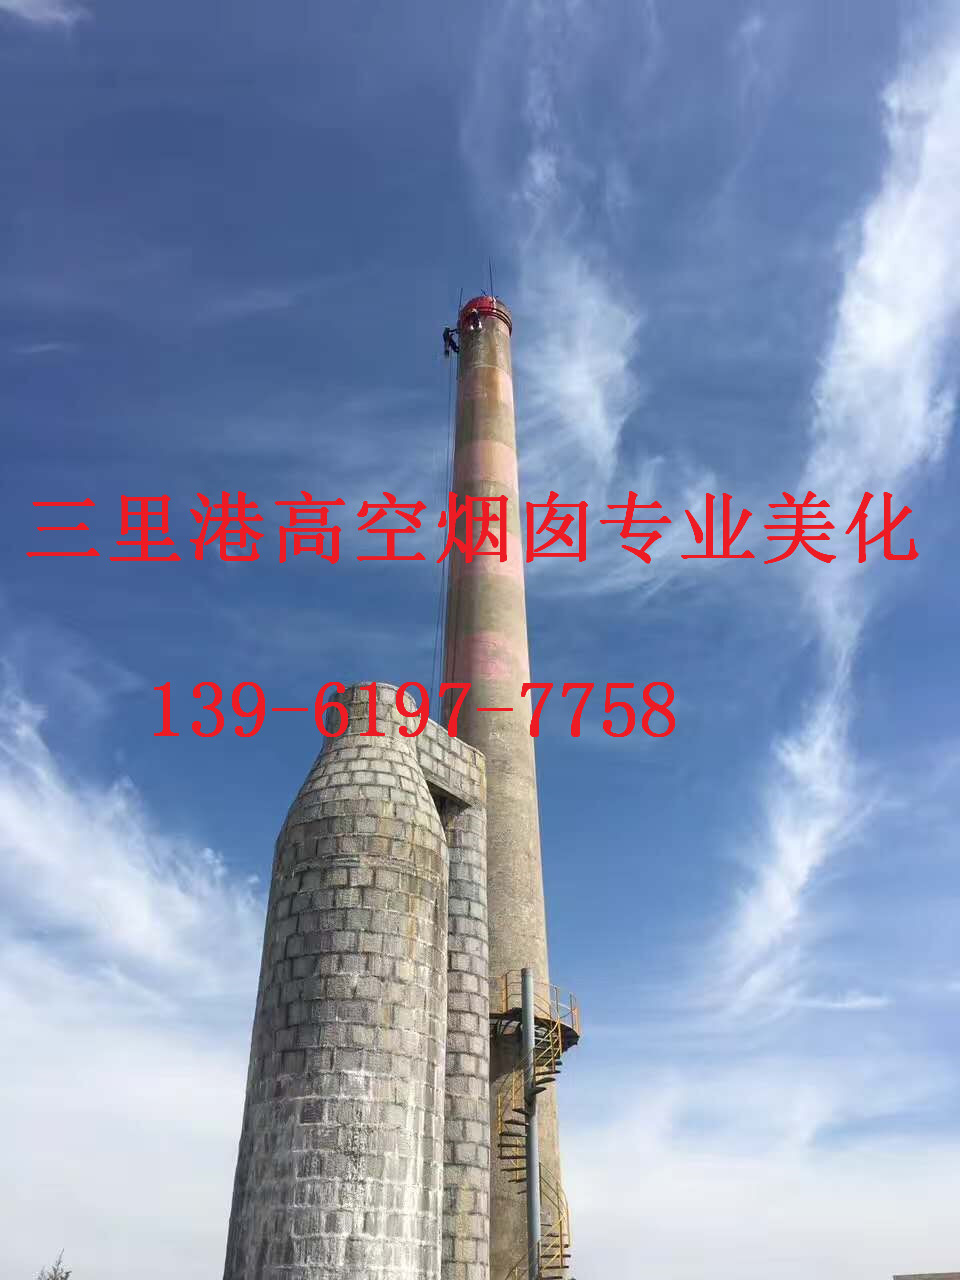 蚌埠市烟囱刷航标环保工程好企业